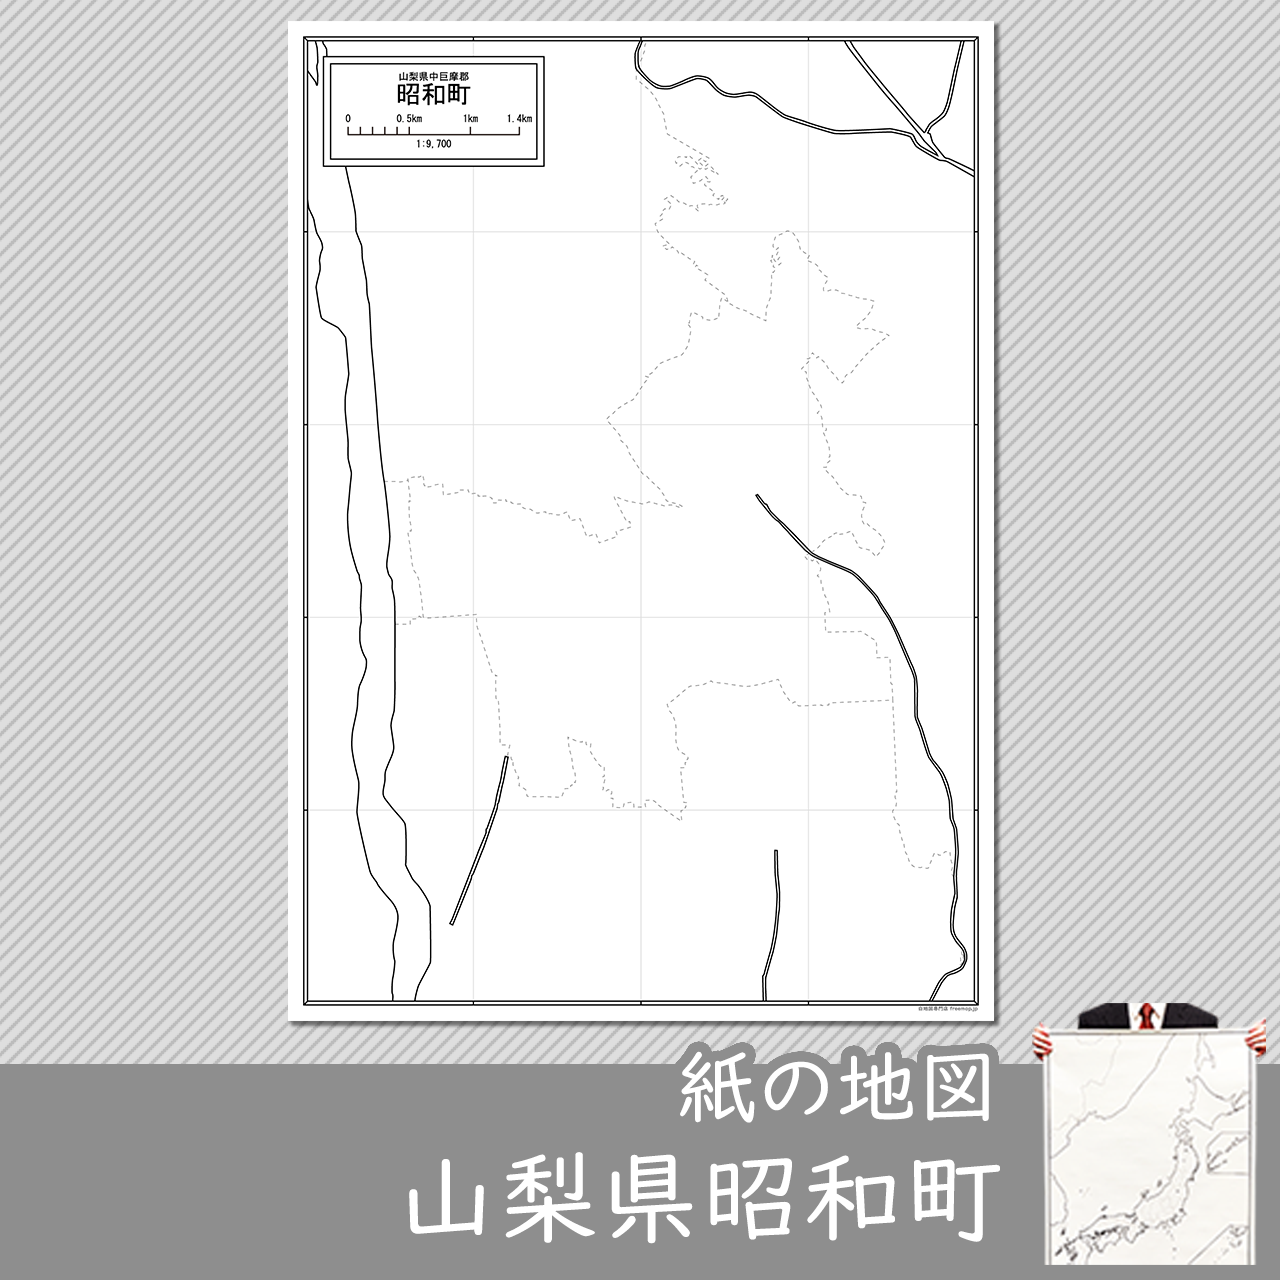 昭和町の紙の白地図